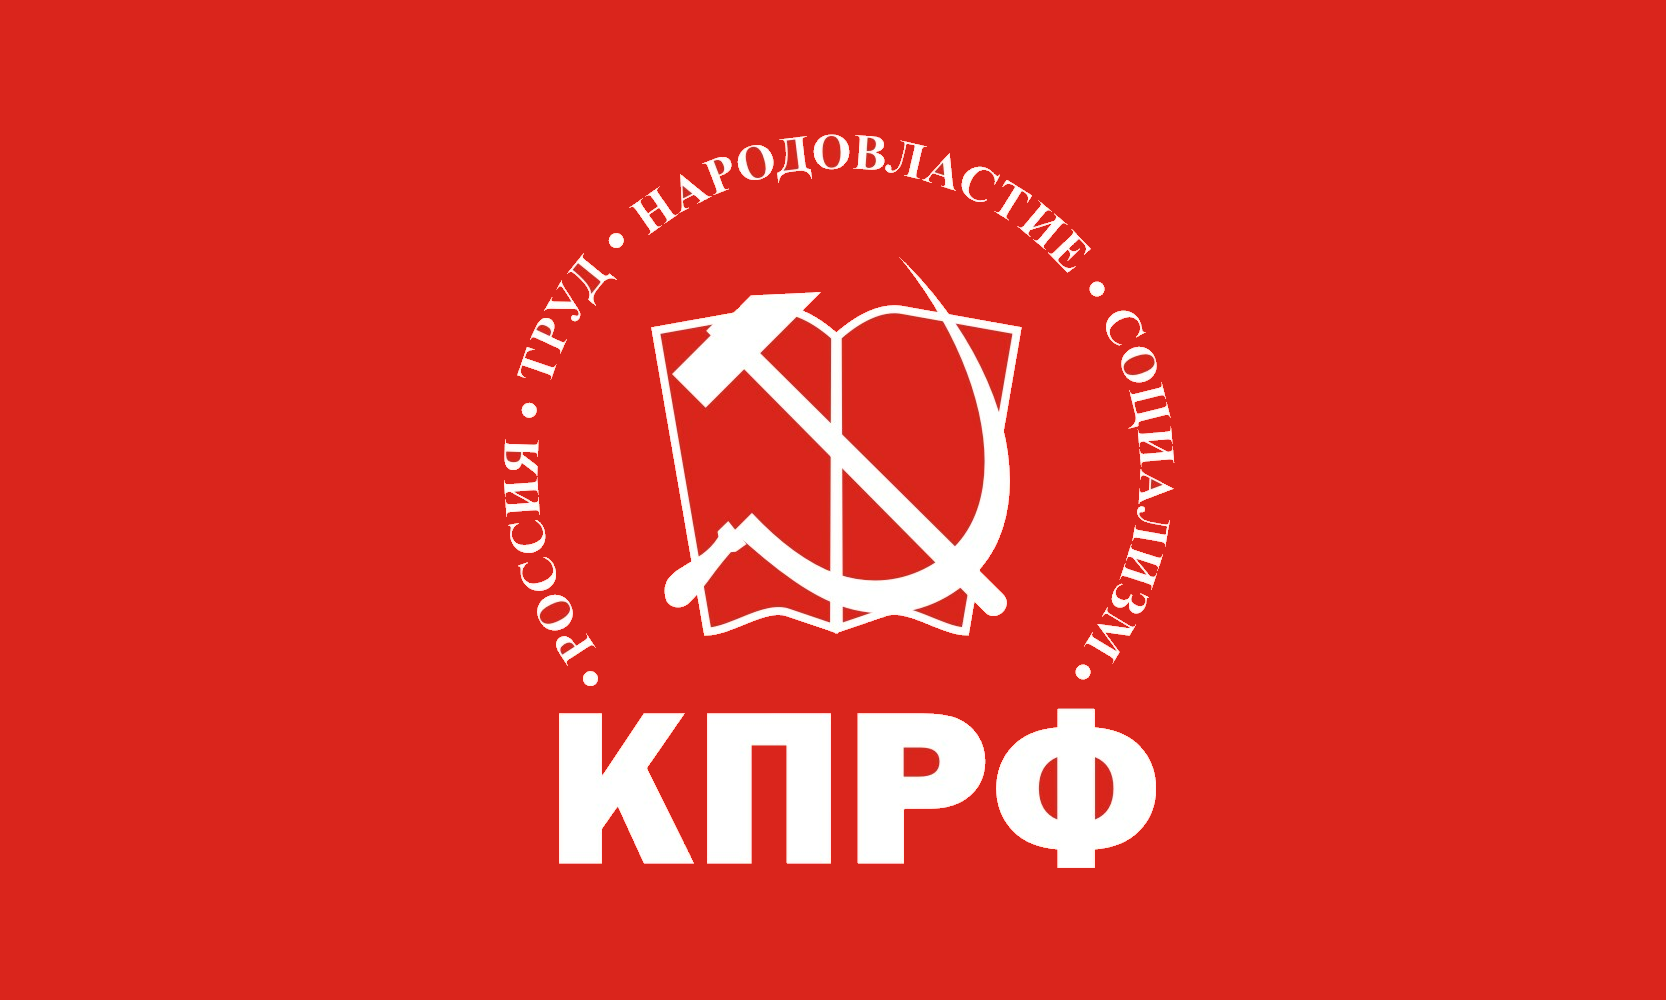 俄羅斯聯邦共產黨黨旗